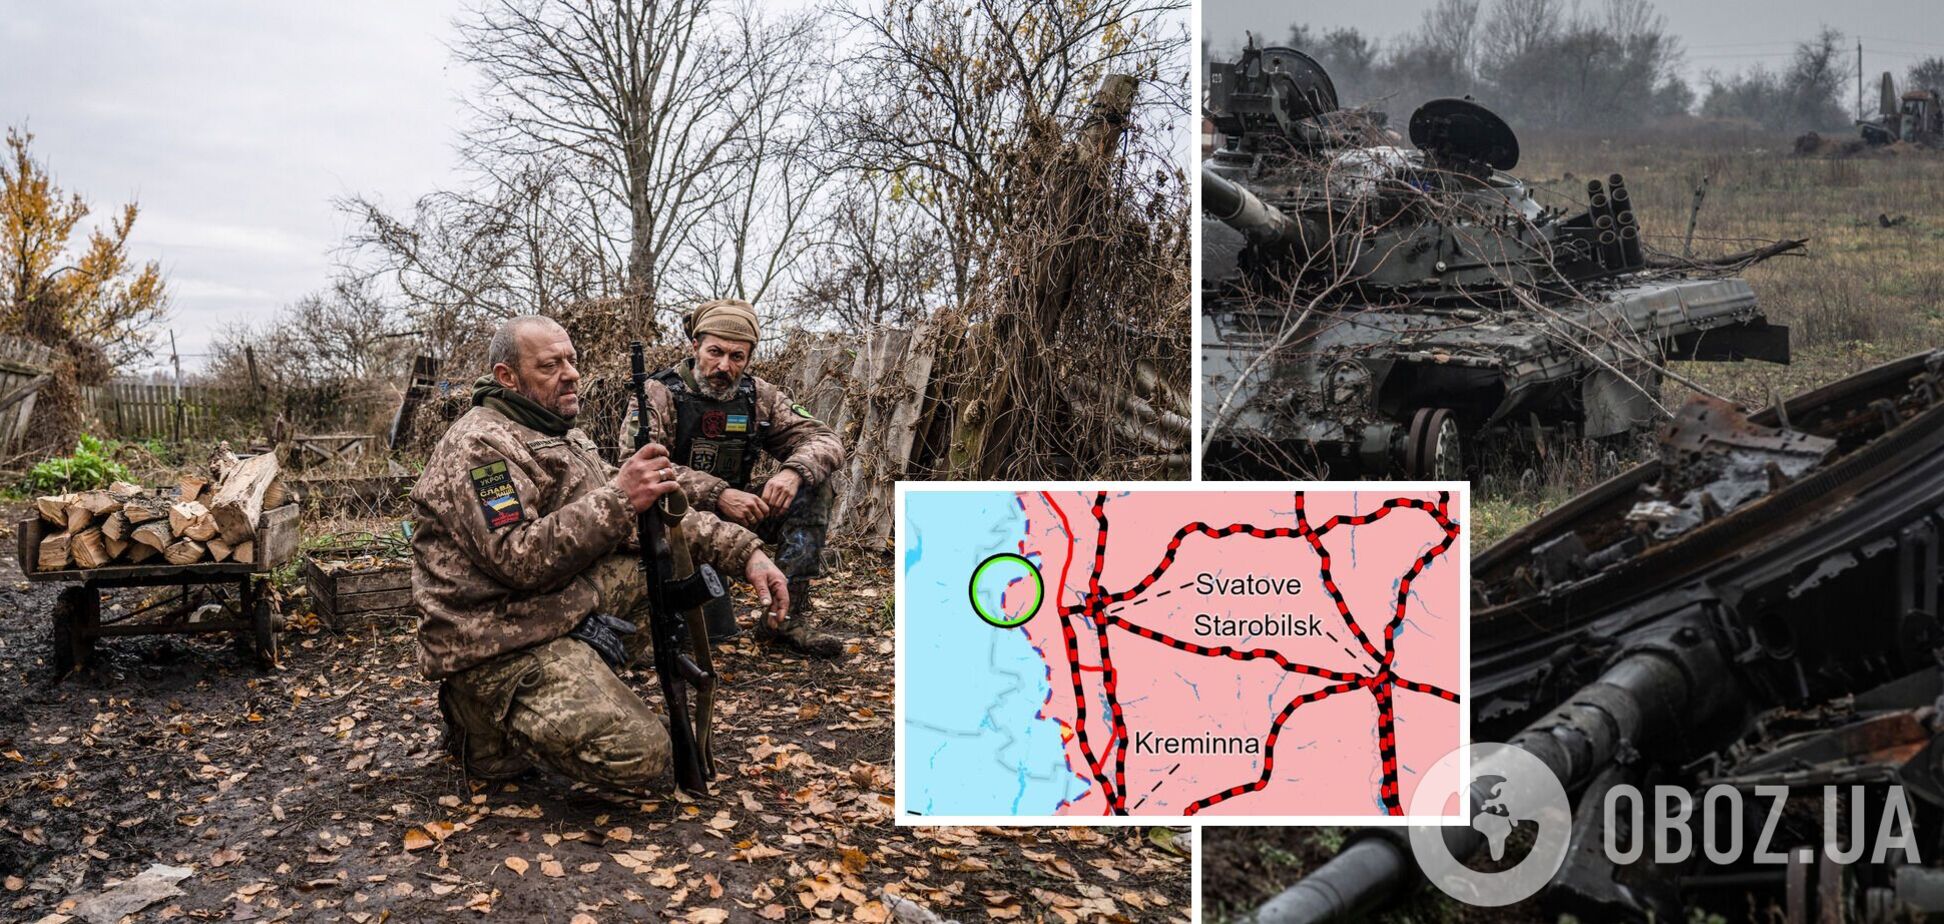 Війська РФ здійснюють контратаки поблизу Сватового, а ЗСУ атакують ворога біля Кремінної: аналіз бойових дій від ISW